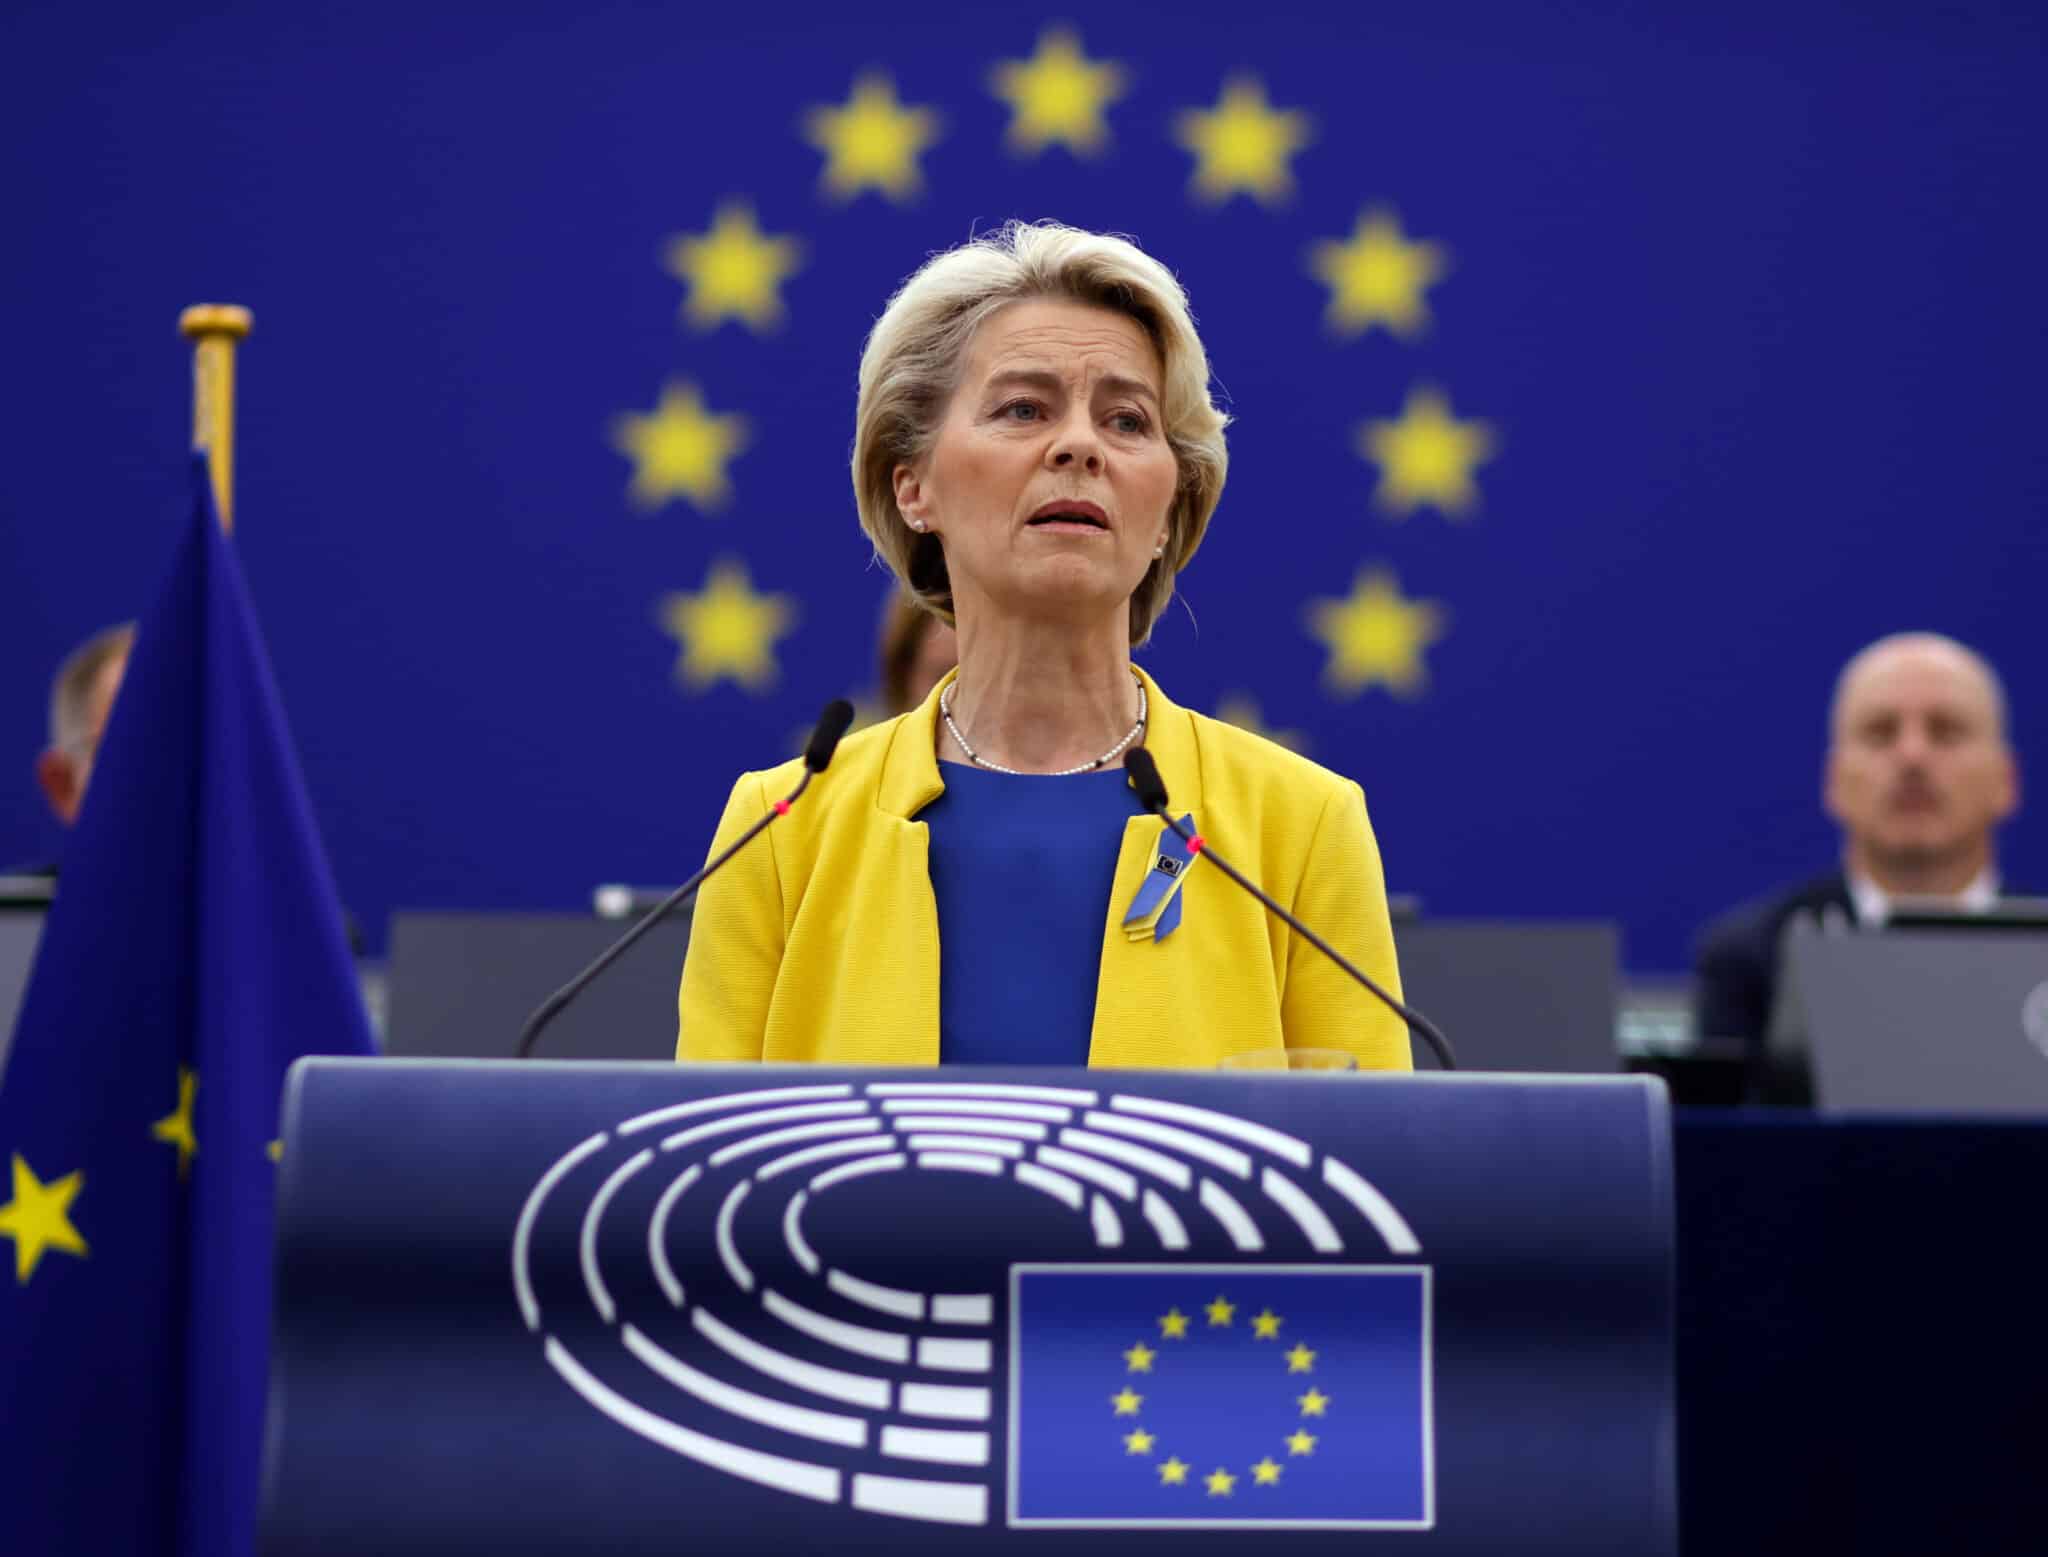 La presidenta de la Comisión Europea, Ursula Von der Leyen, habla en el debate sobre el estado de la Unión que tiene lugar en el Parlamento Europeo en Estrasburgo, Francia.